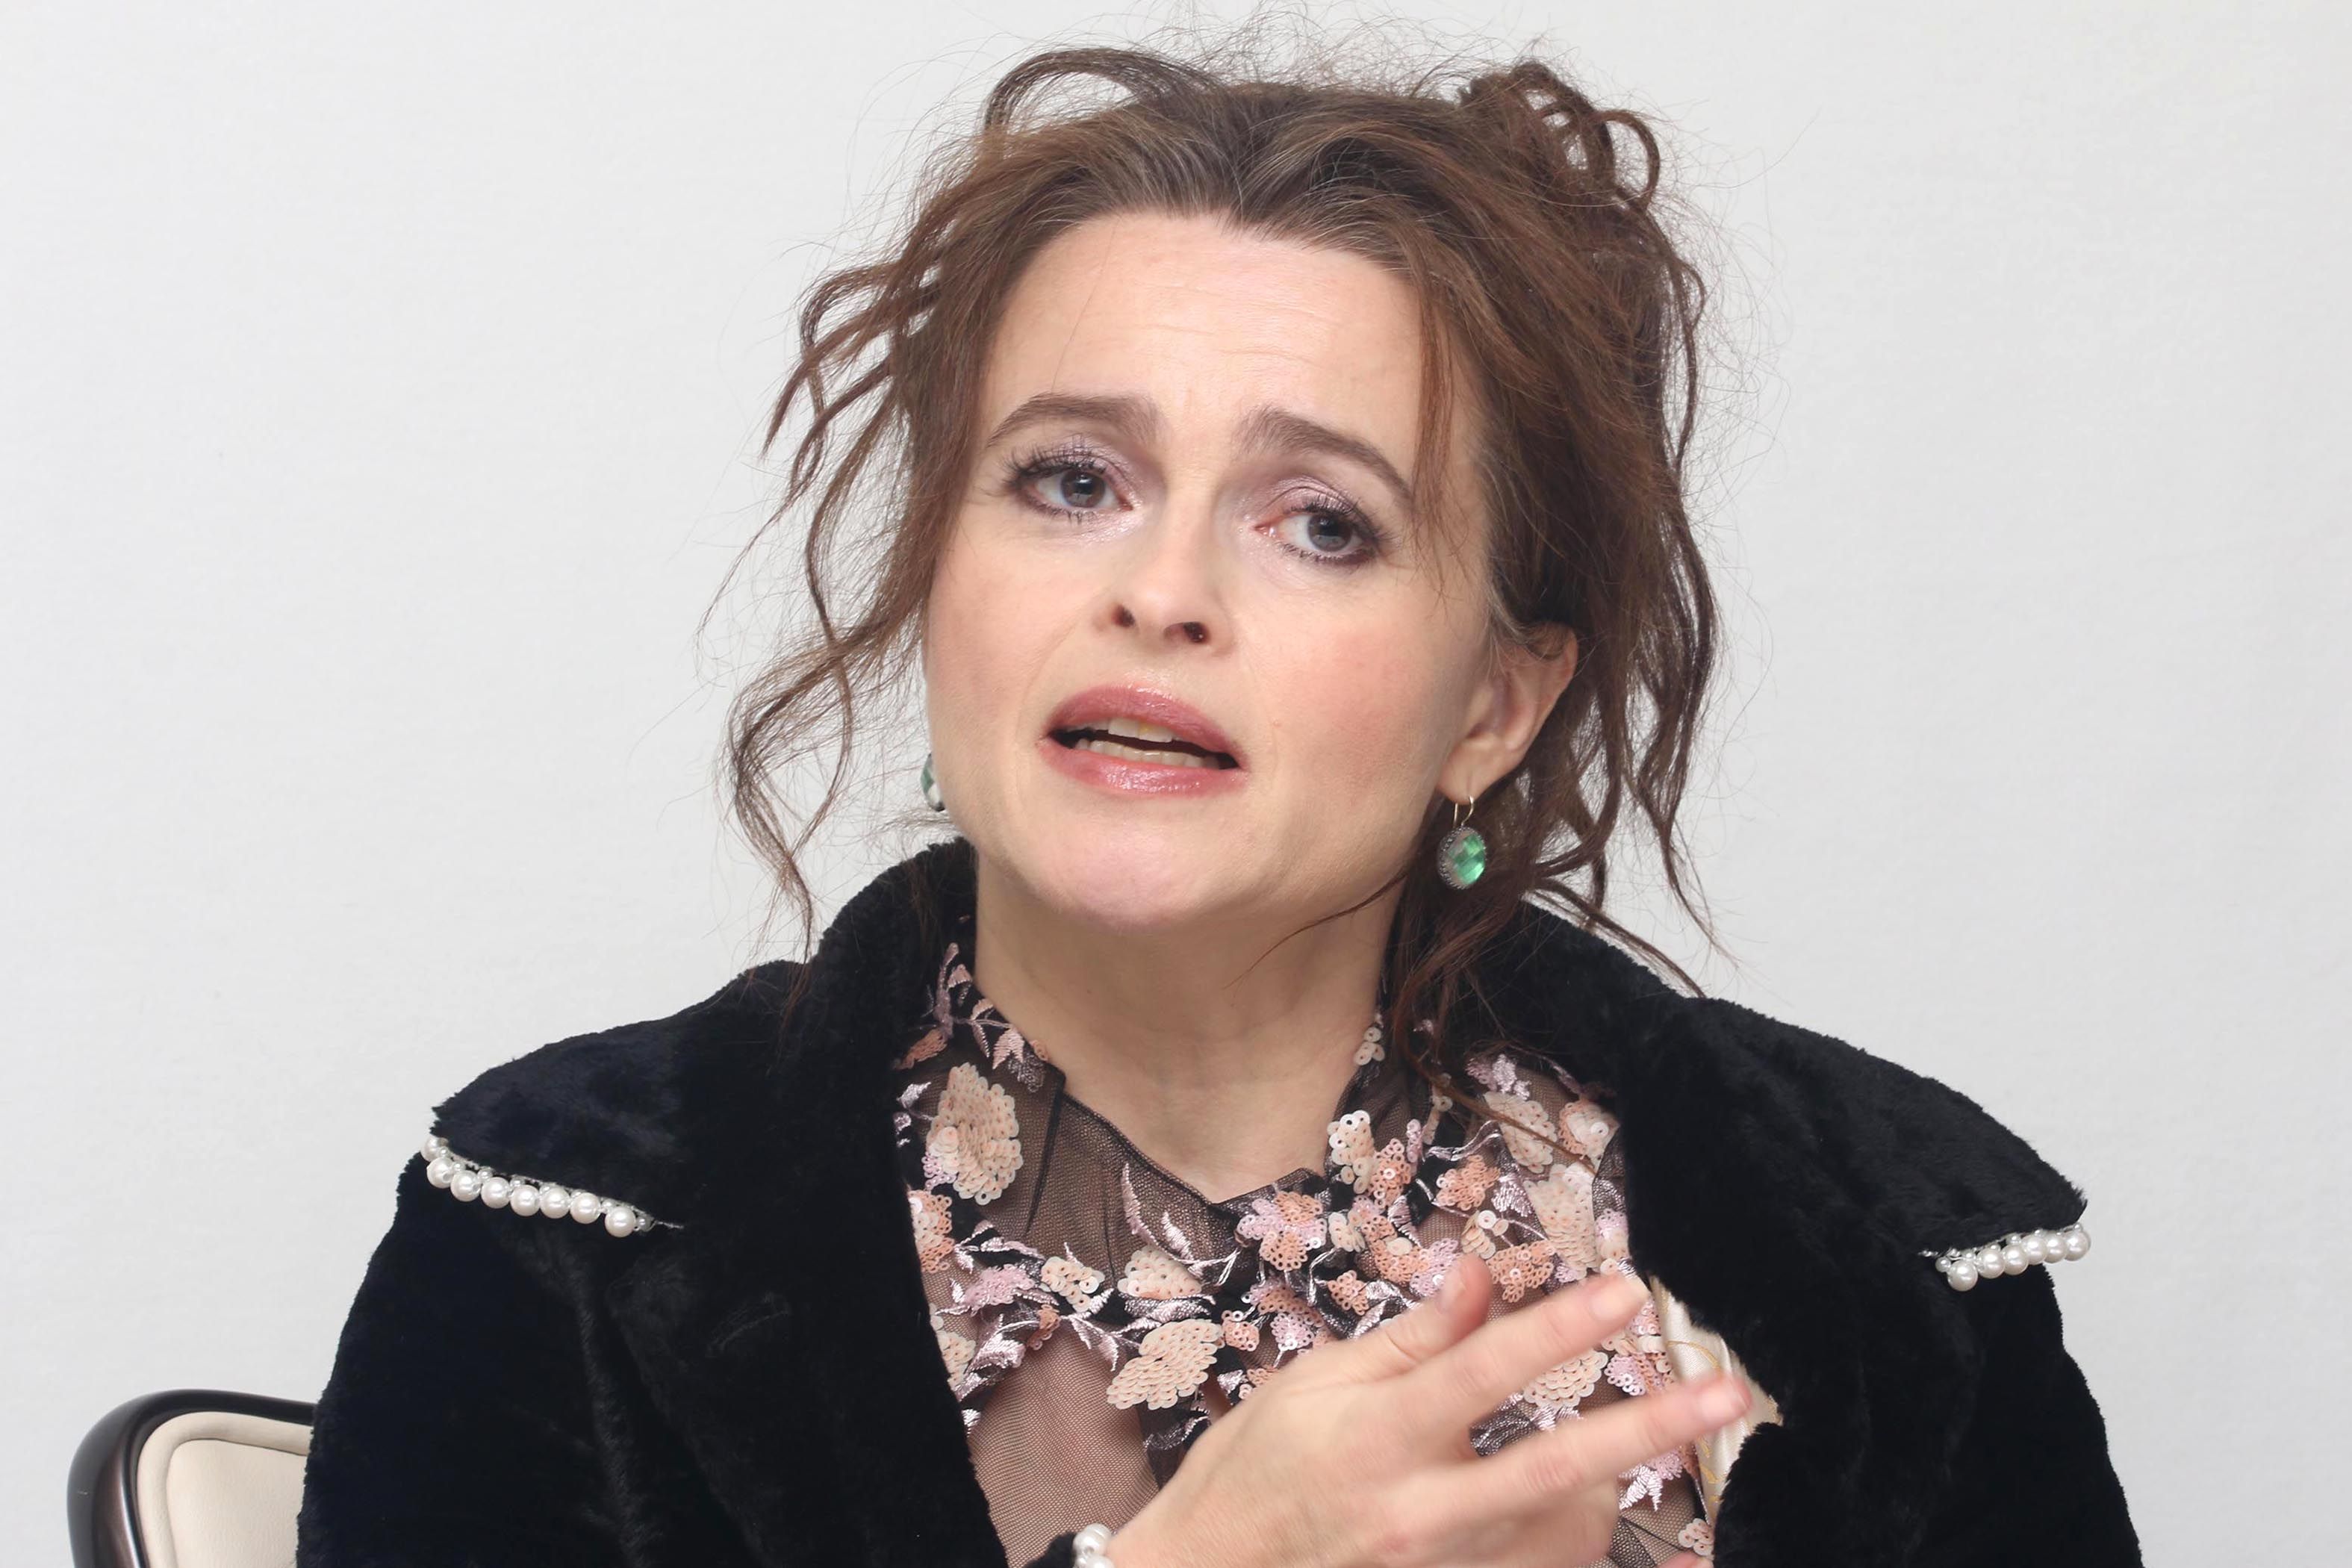 Helena Bonham Carter recebeu um acordo após se separar de Tim Burton, apesar de não ter um casamento formal?